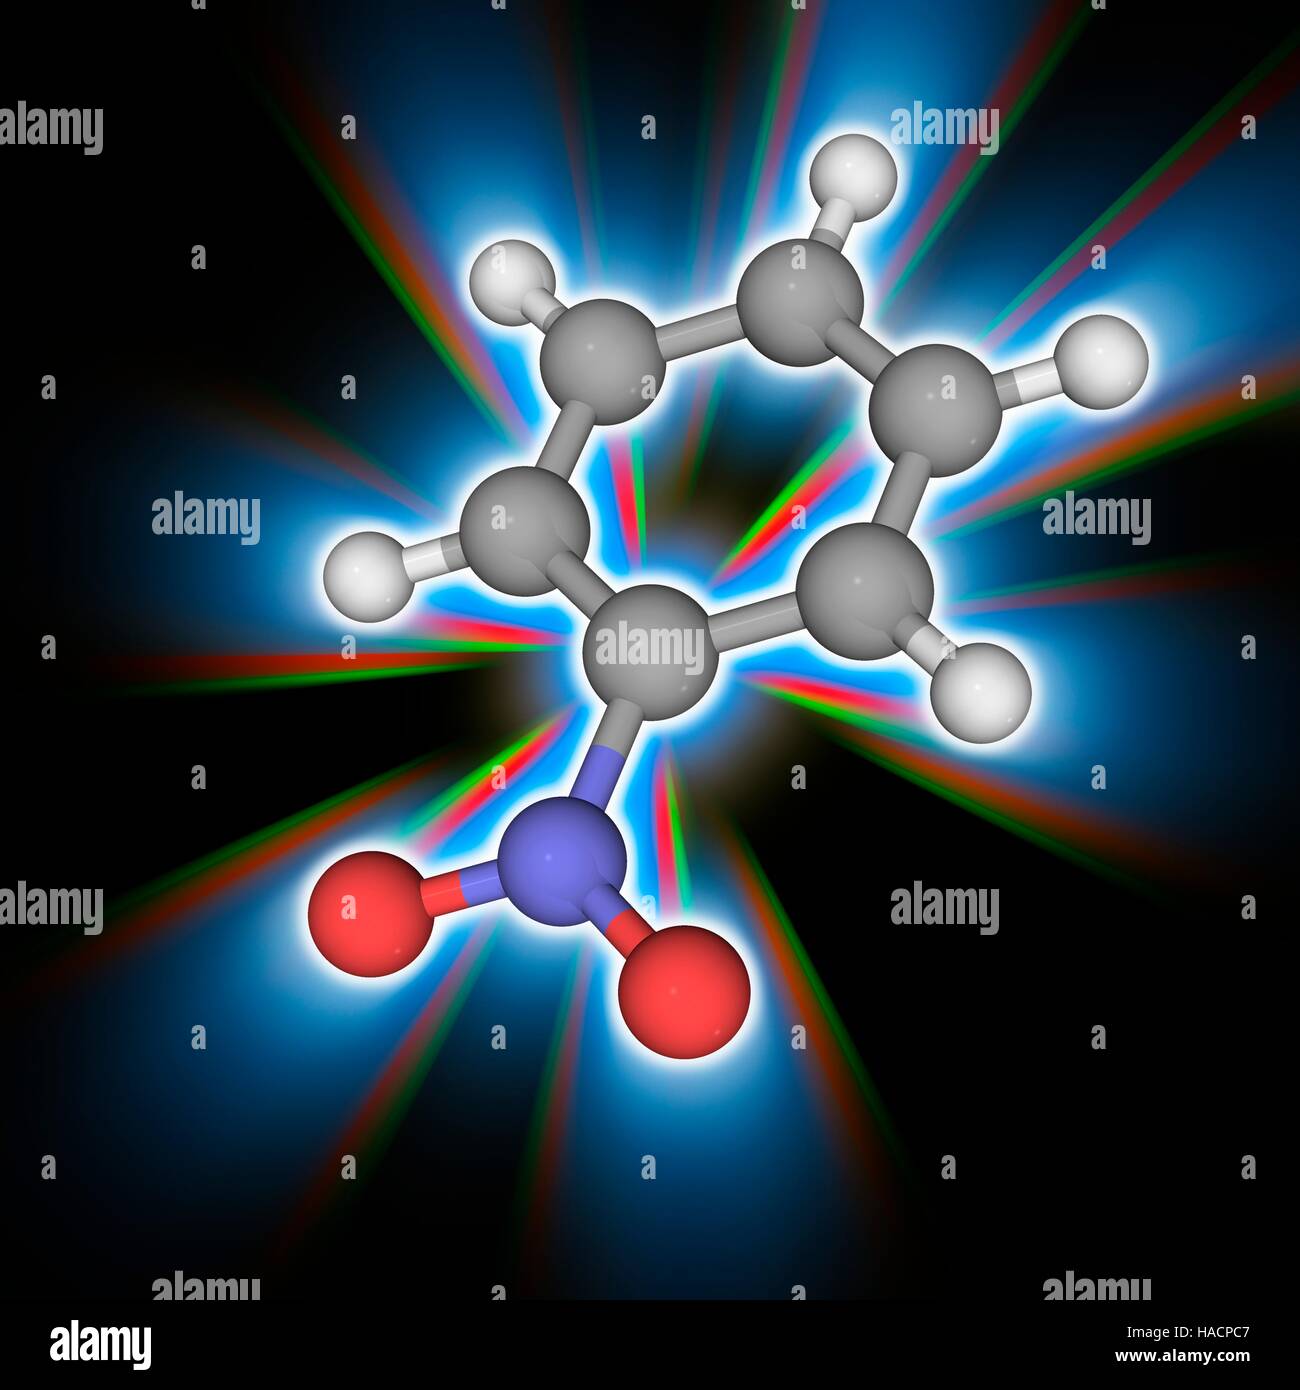 Nitrobenzene. Molekulares Modell des organischen Verbindung Nitrobenzene (C6. H5. N.O2), produziert in großem Maßstab als Vorläufer der industriellen chemischen Anilin. Atome als Kugeln dargestellt werden und sind farblich gekennzeichnet: Kohlenstoff (grau), Wasserstoff (weiß), Stickstoff (blau) und Sauerstoff (rot). Abbildung. Stockfoto